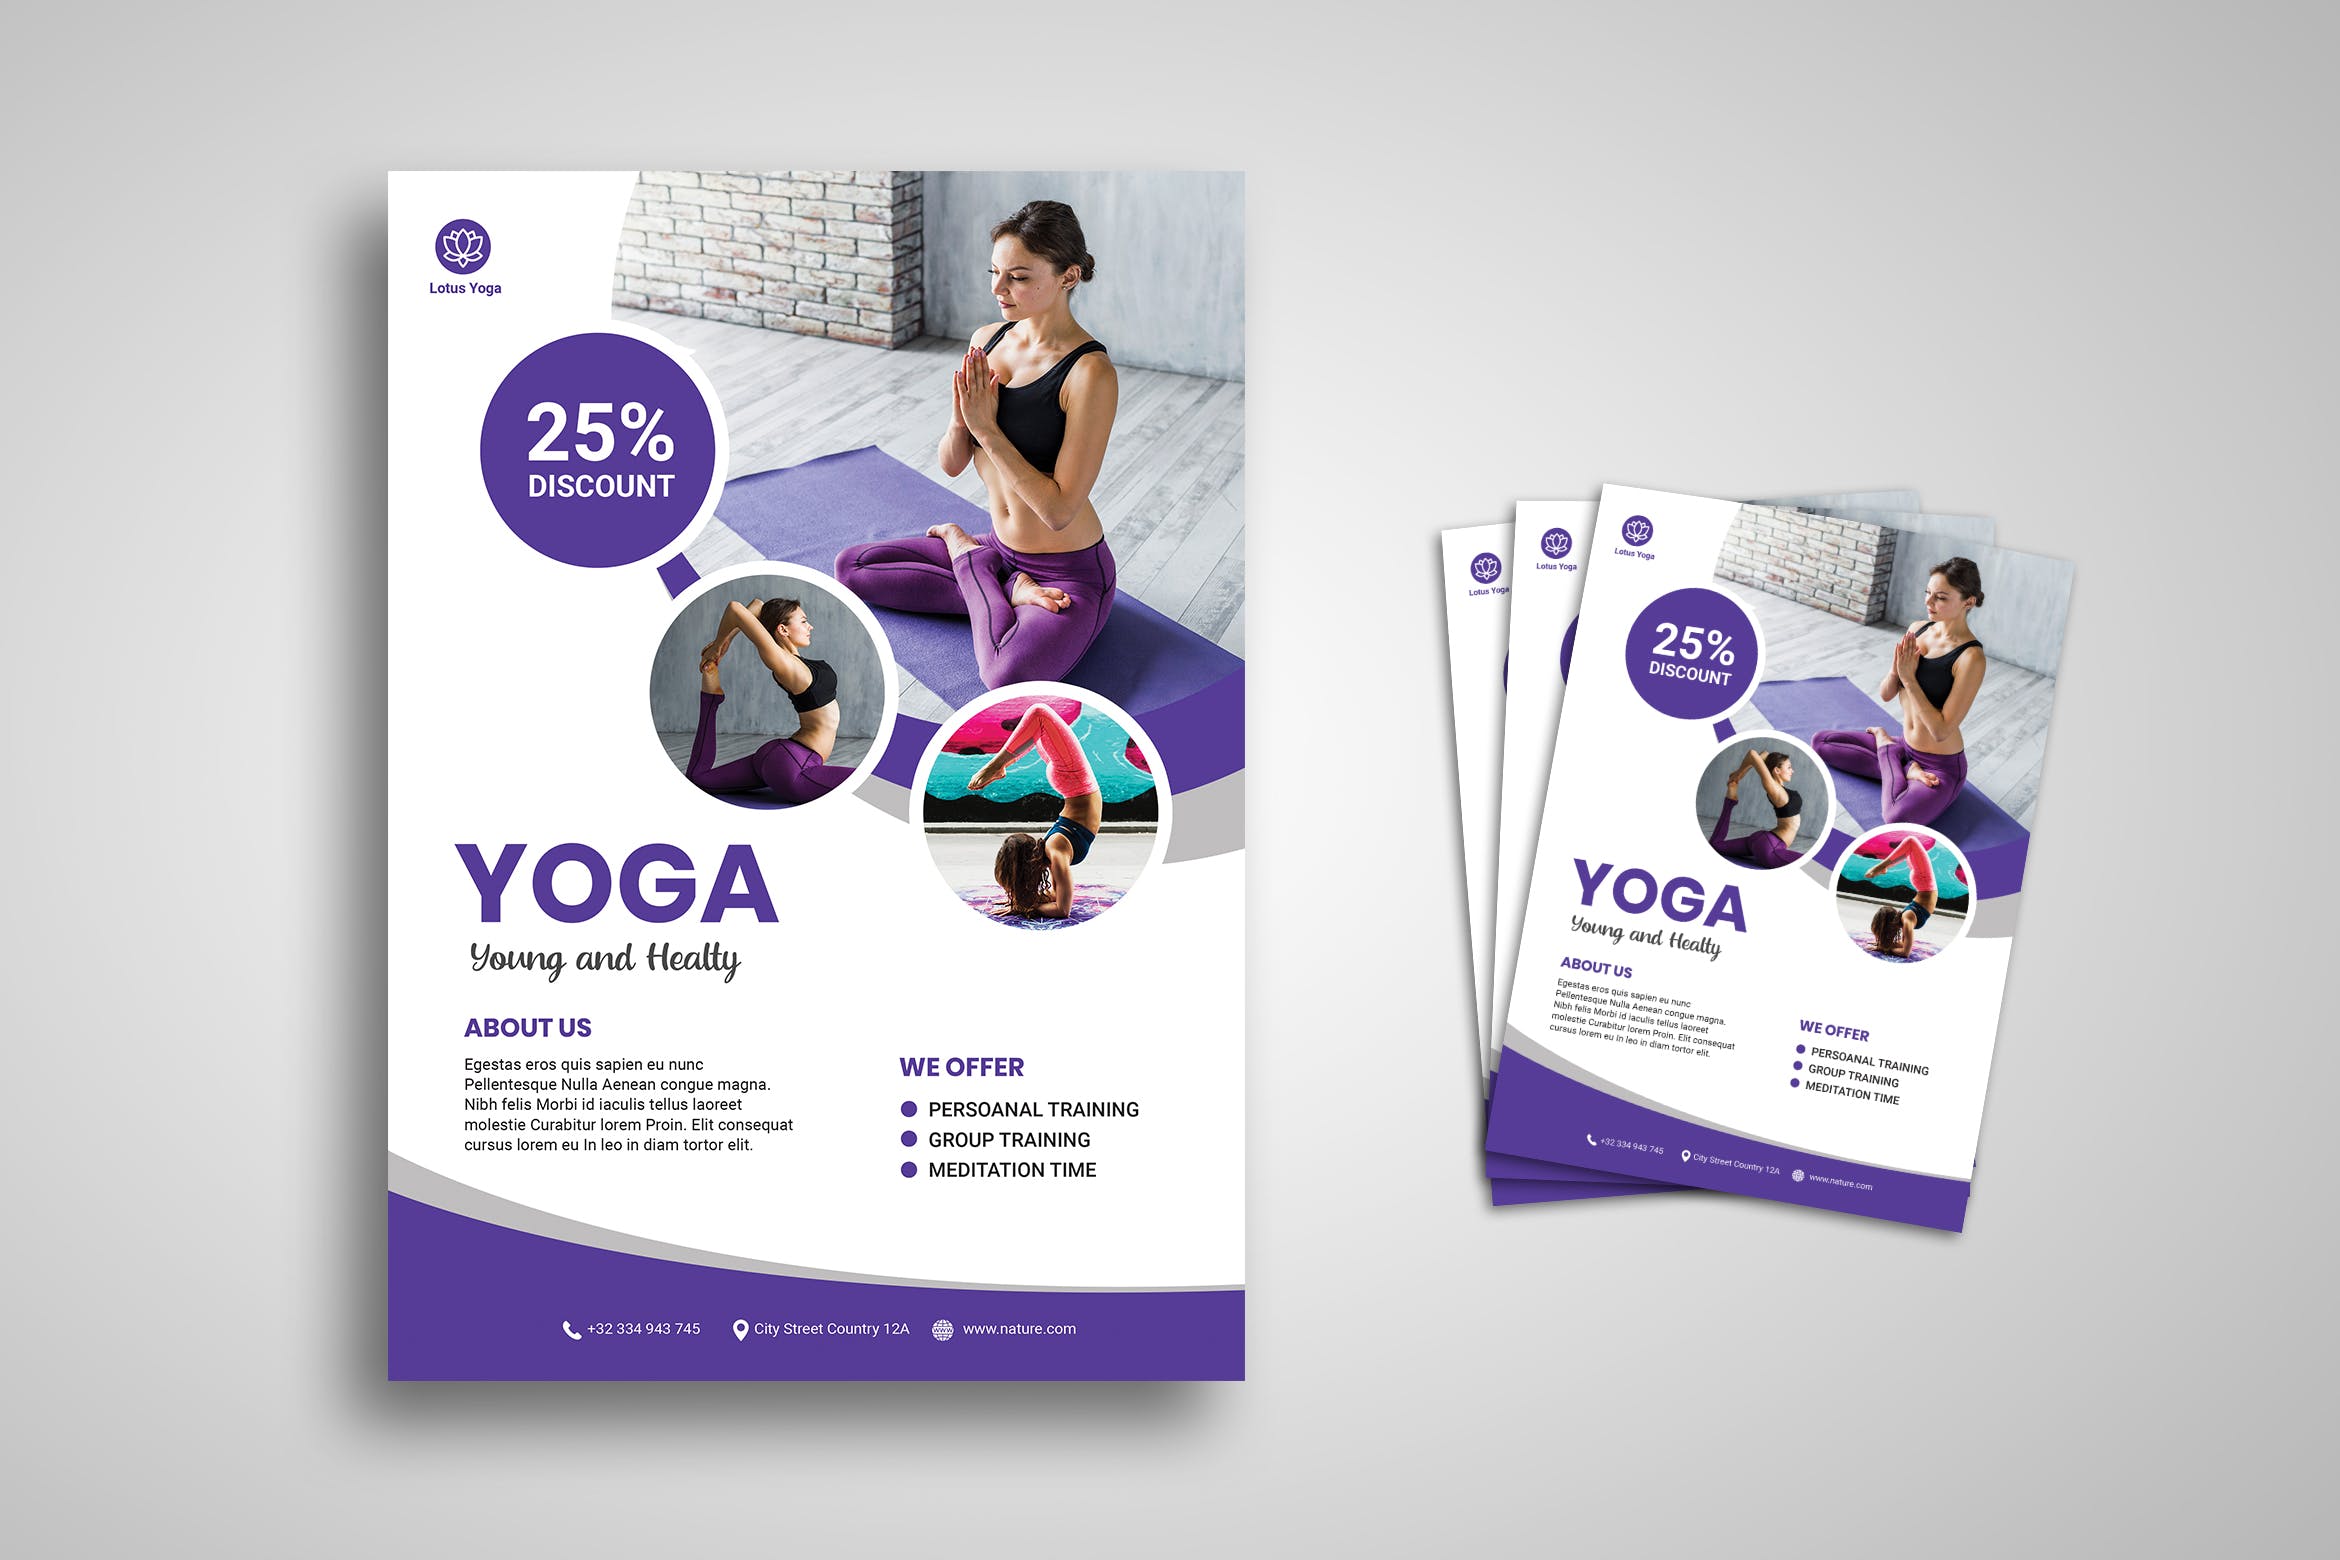 瑜伽培训班培训机构宣传海报传单设计模板 Yoga Flyer